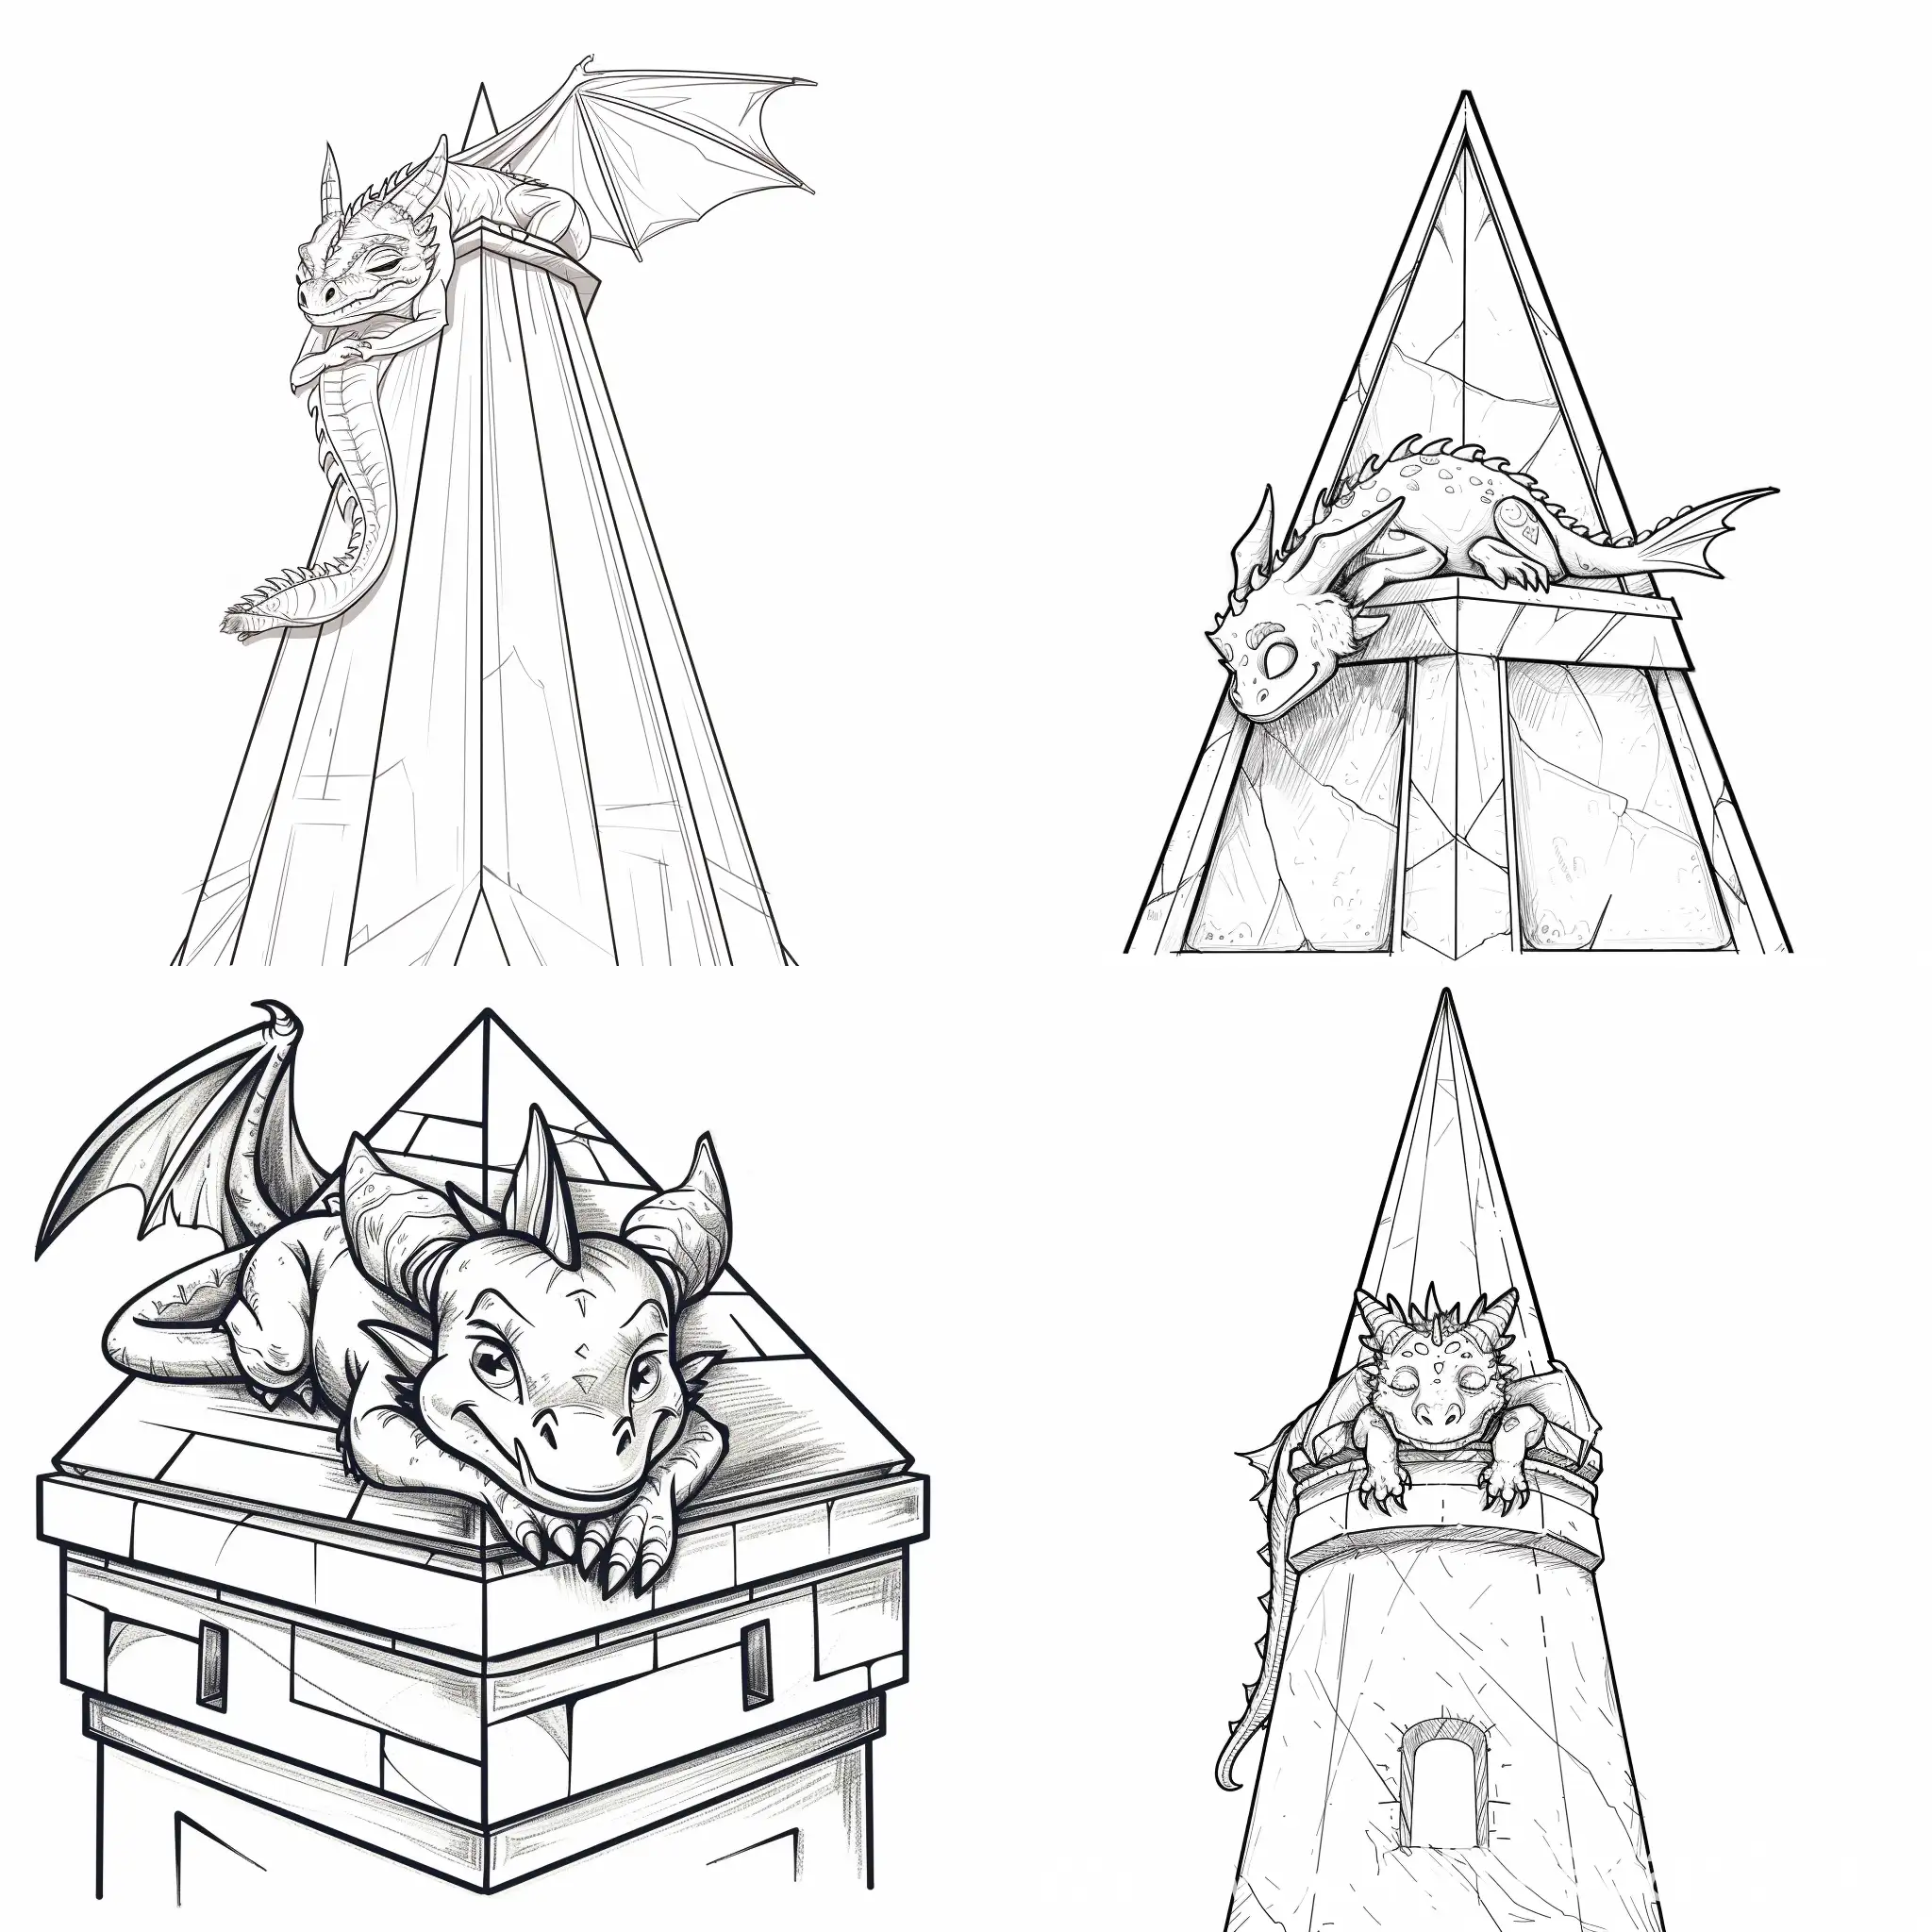 画一条可爱的龙趴在塔尖上，塔尖为三角形仰视视角，使用线条画风格